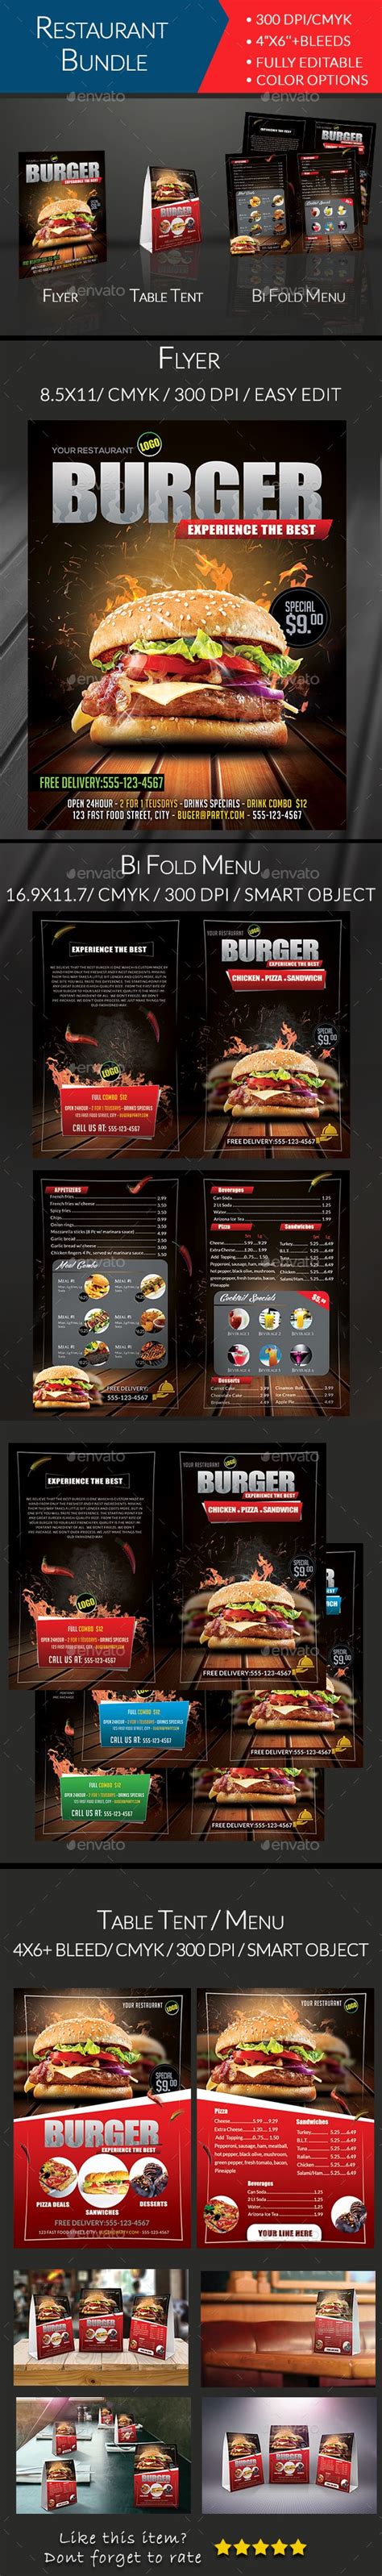 restaurant promotional bundle  arrow graphicriver